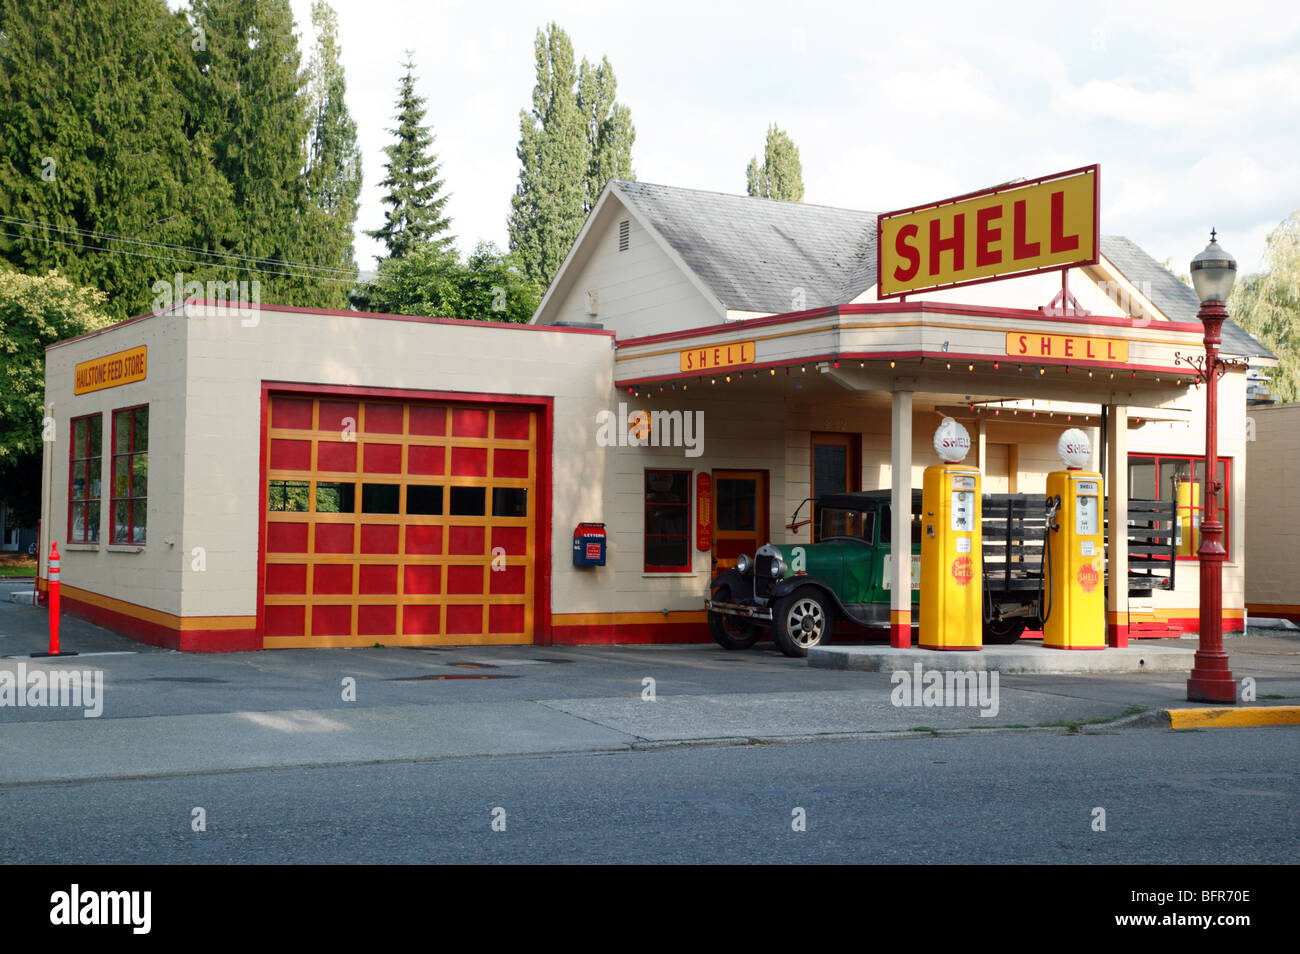 L'alimentation et de gaz grêlon store, Issaquah, Washington, USA Banque D'Images